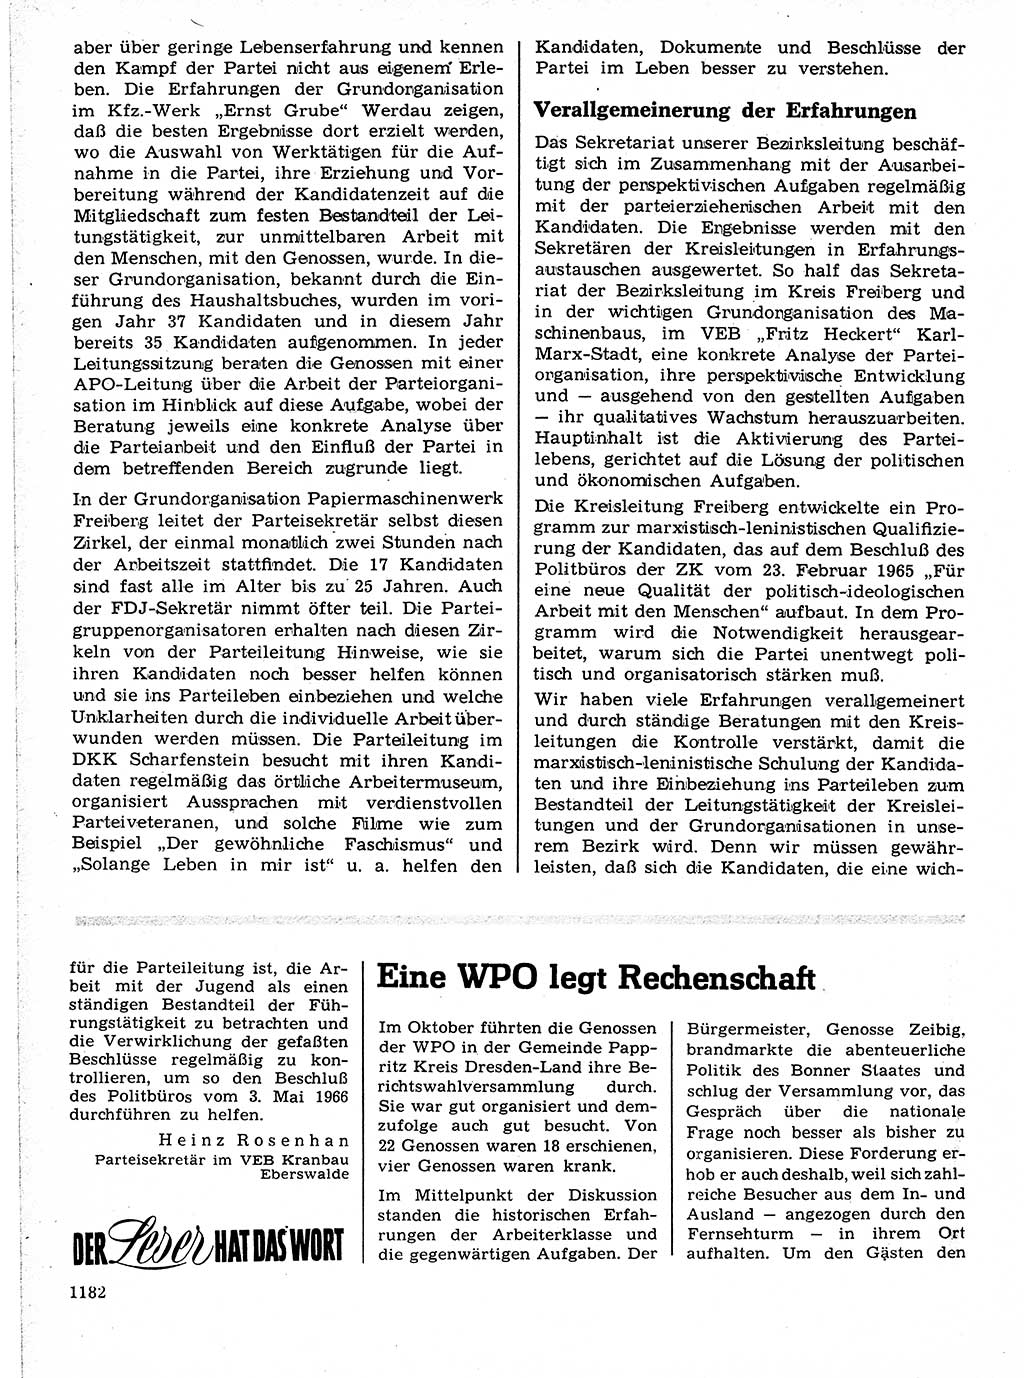 Neuer Weg (NW), Organ des Zentralkomitees (ZK) der SED (Sozialistische Einheitspartei Deutschlands) für Fragen des Parteilebens, 21. Jahrgang [Deutsche Demokratische Republik (DDR)] 1966, Seite 1182 (NW ZK SED DDR 1966, S. 1182)